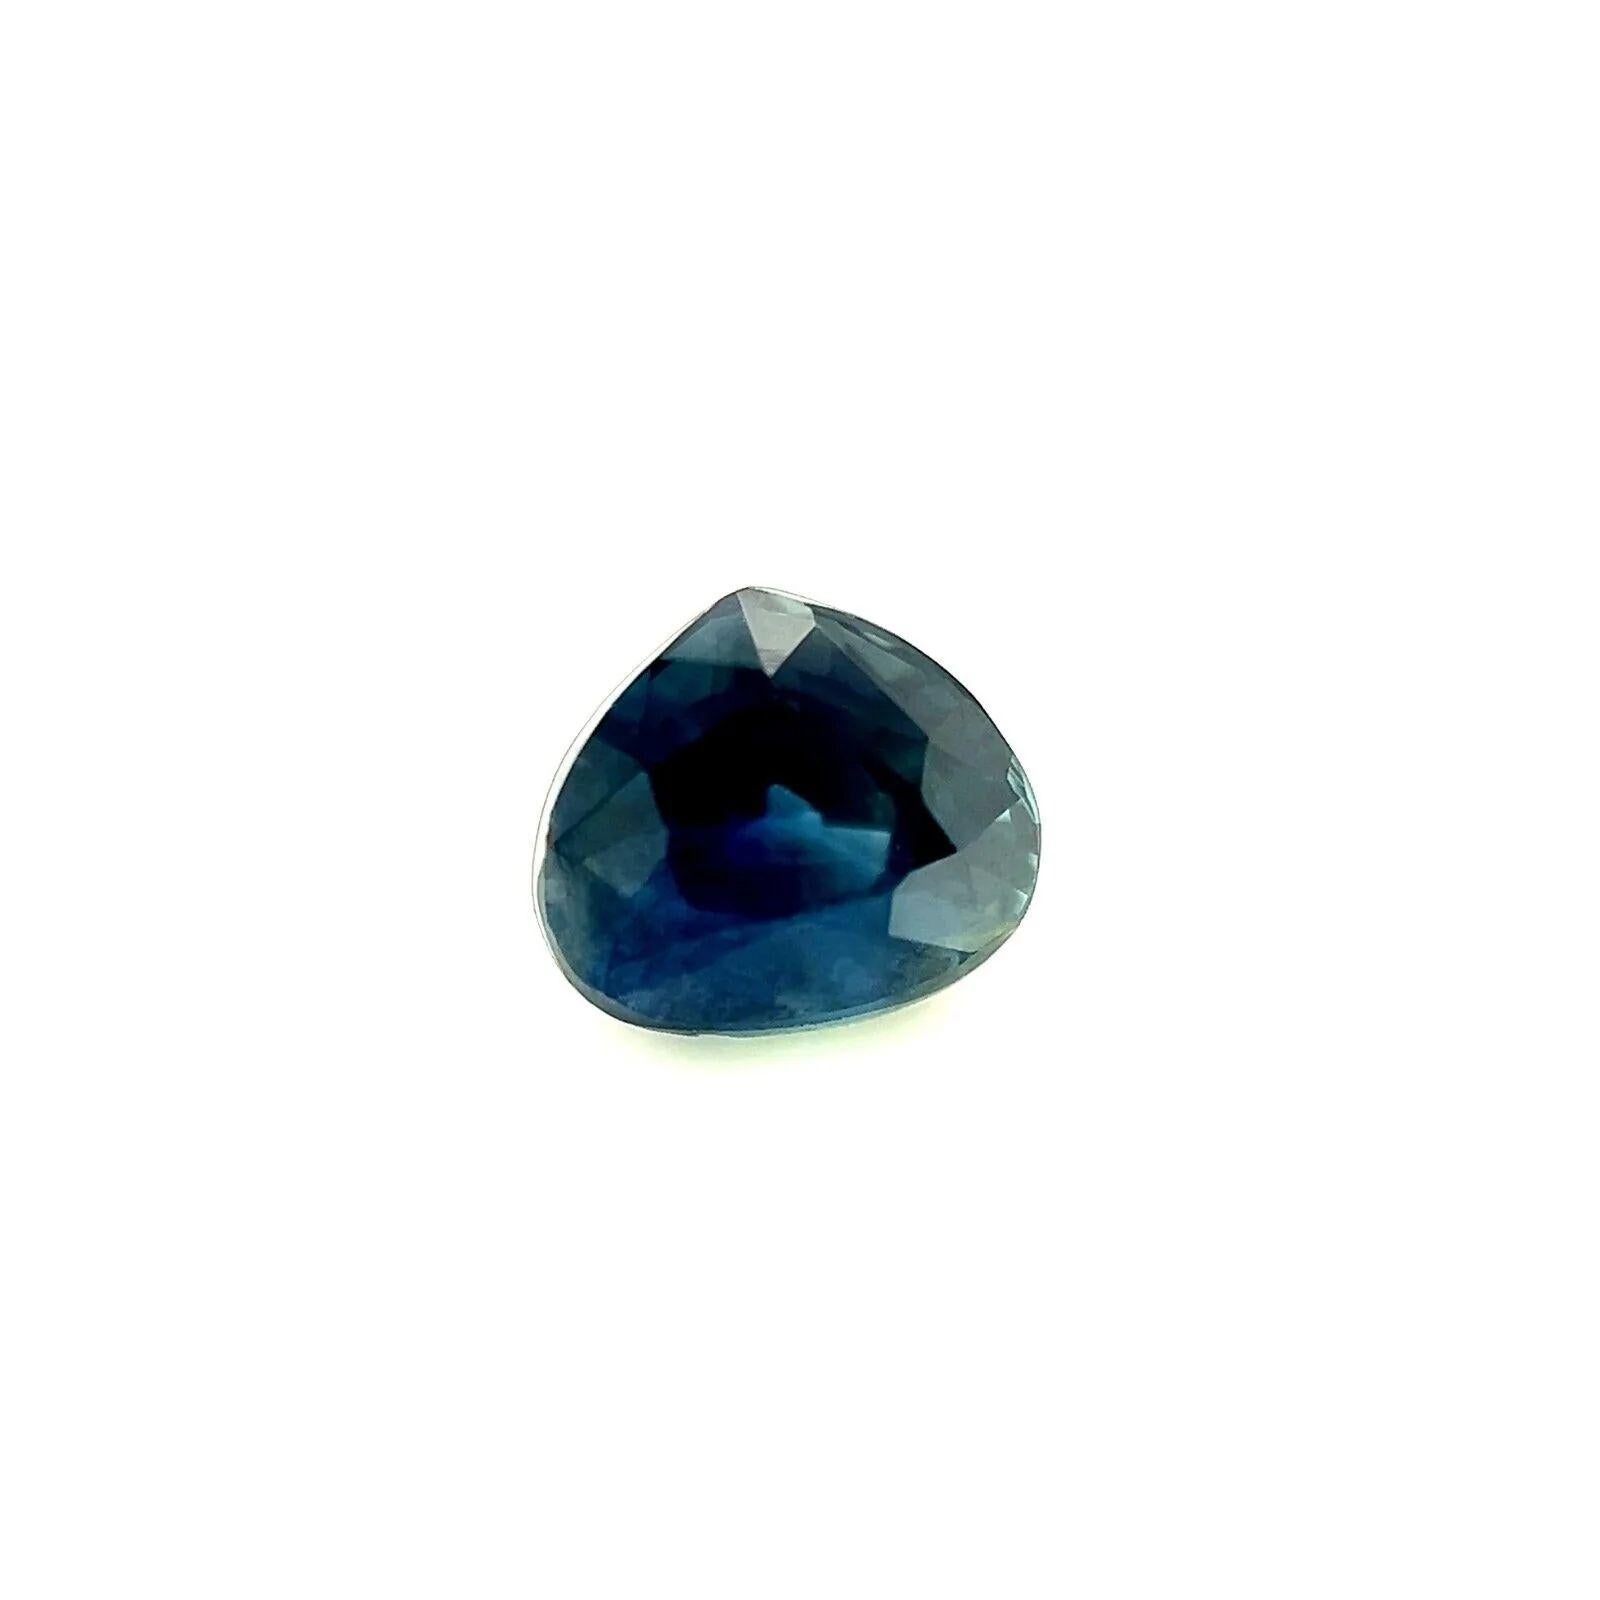 Unbehandelt 0.85ct Natürlicher Saphir Tiefblauer Birnenschliff Edelstein 5.3x4.6mm Vs

Natürlicher unerhitzter tiefblauer Saphir Edelstein.
0,85 Karat mit einer schönen tiefblauen Farbe und einem guten Birnenschliff.
Auch hat eine gute Klarheit,